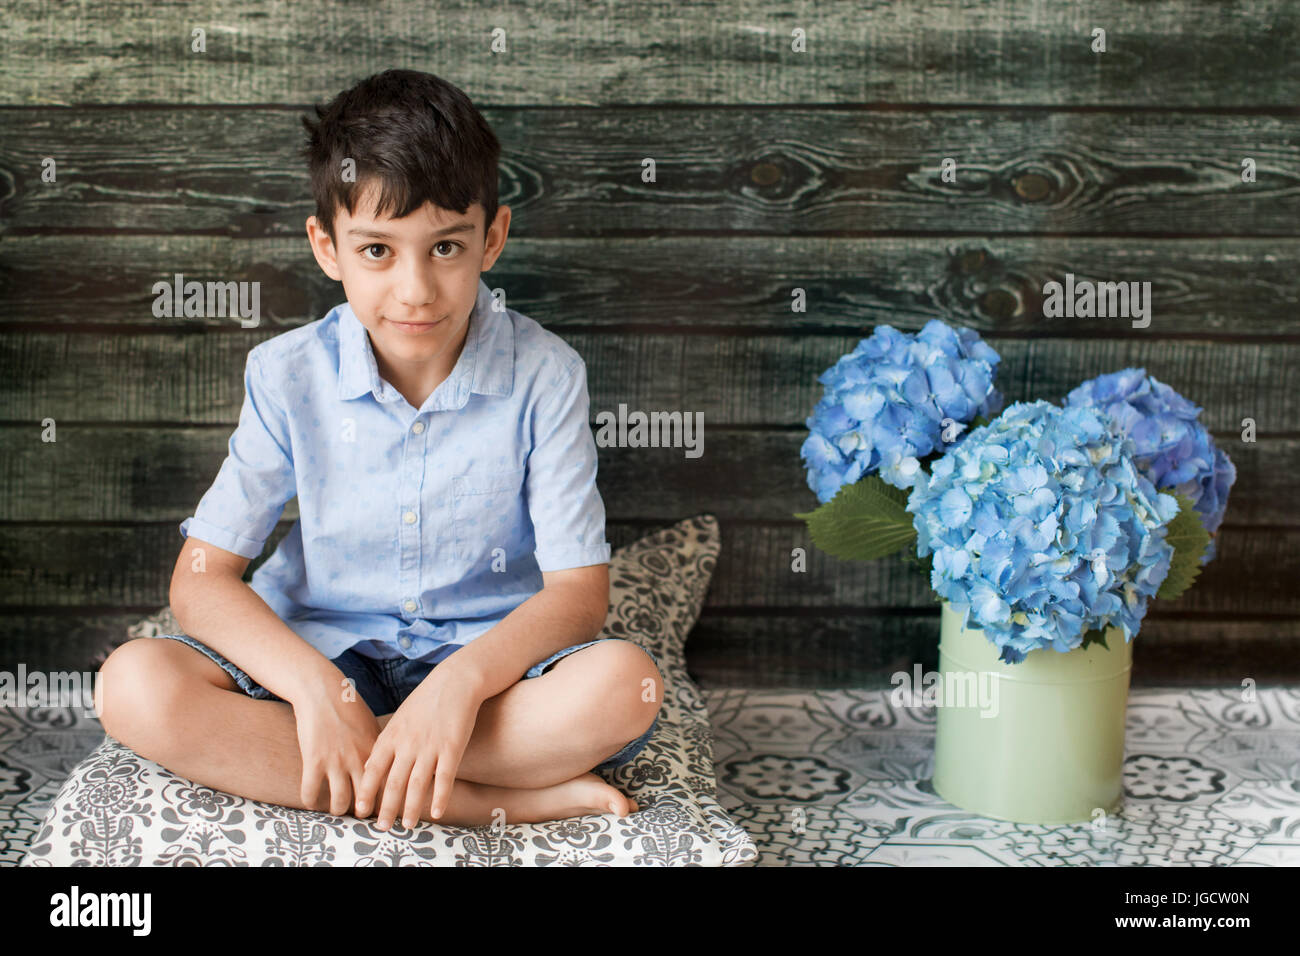 Ragazzo seduto accanto a un vaso con fiori di ortensie Foto Stock